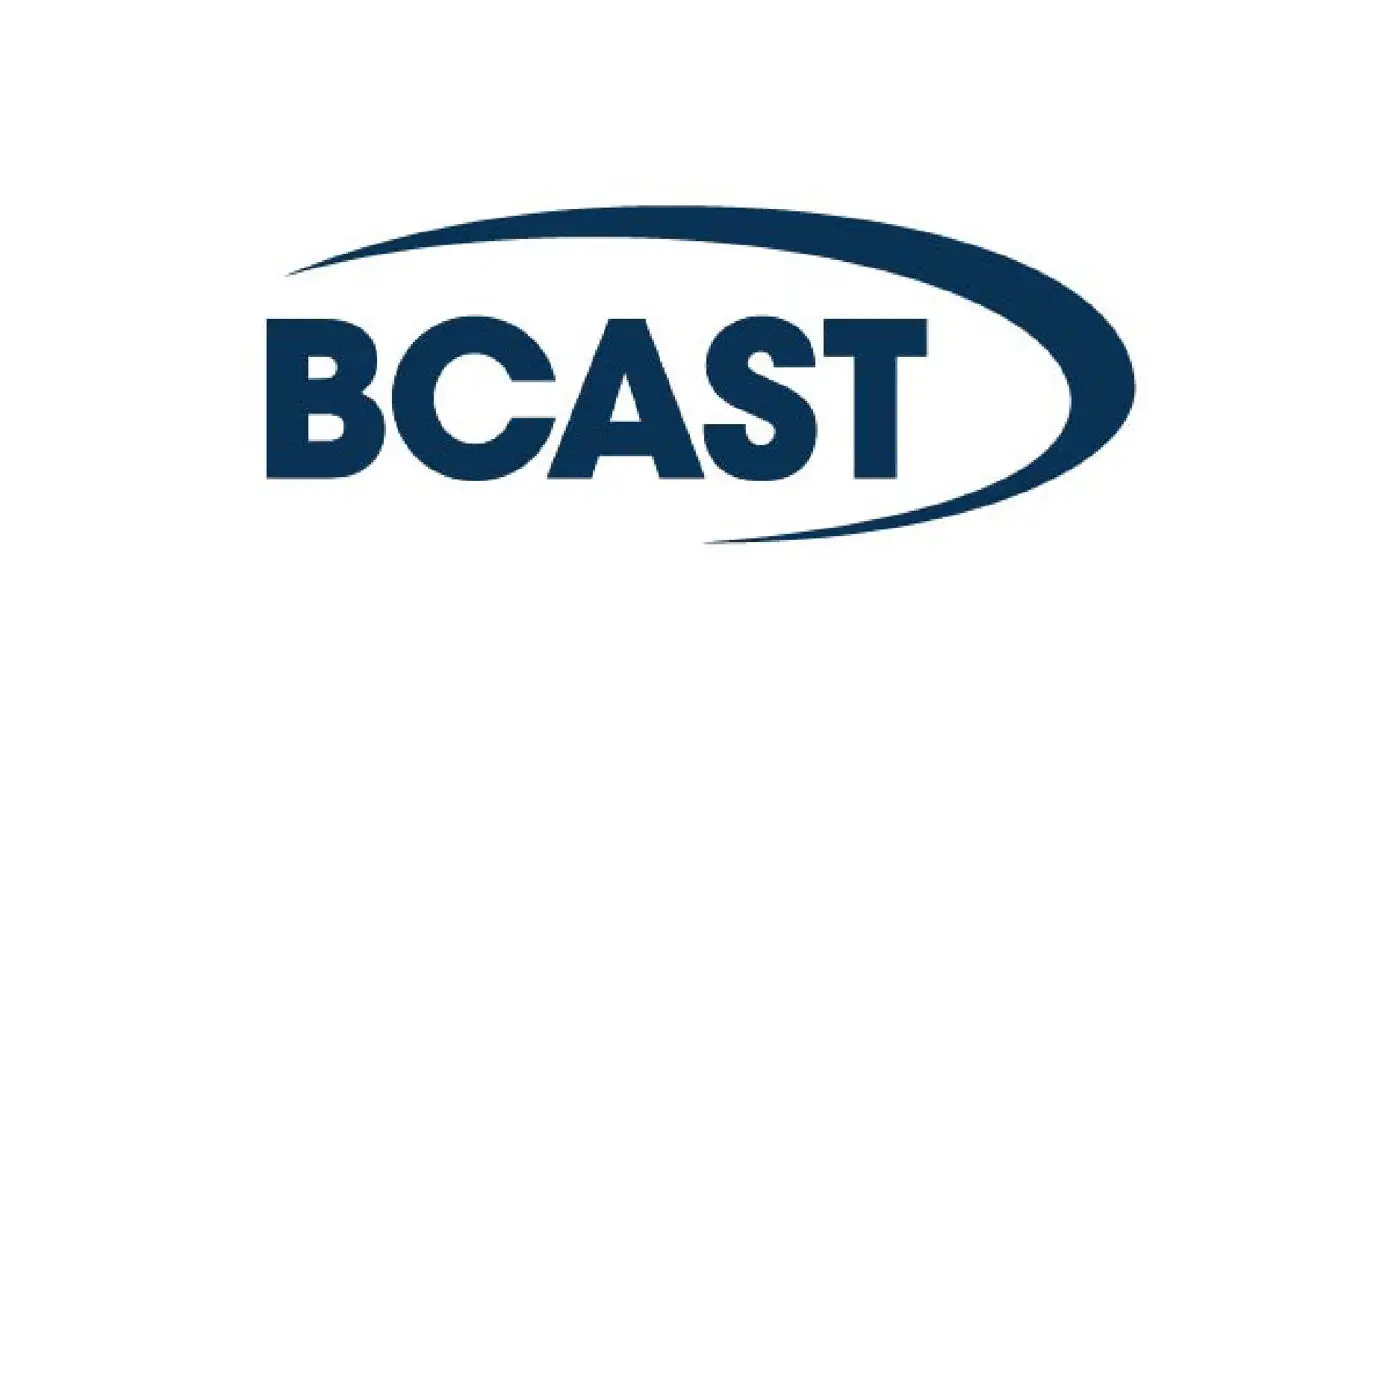 BCAST 450x450 v2